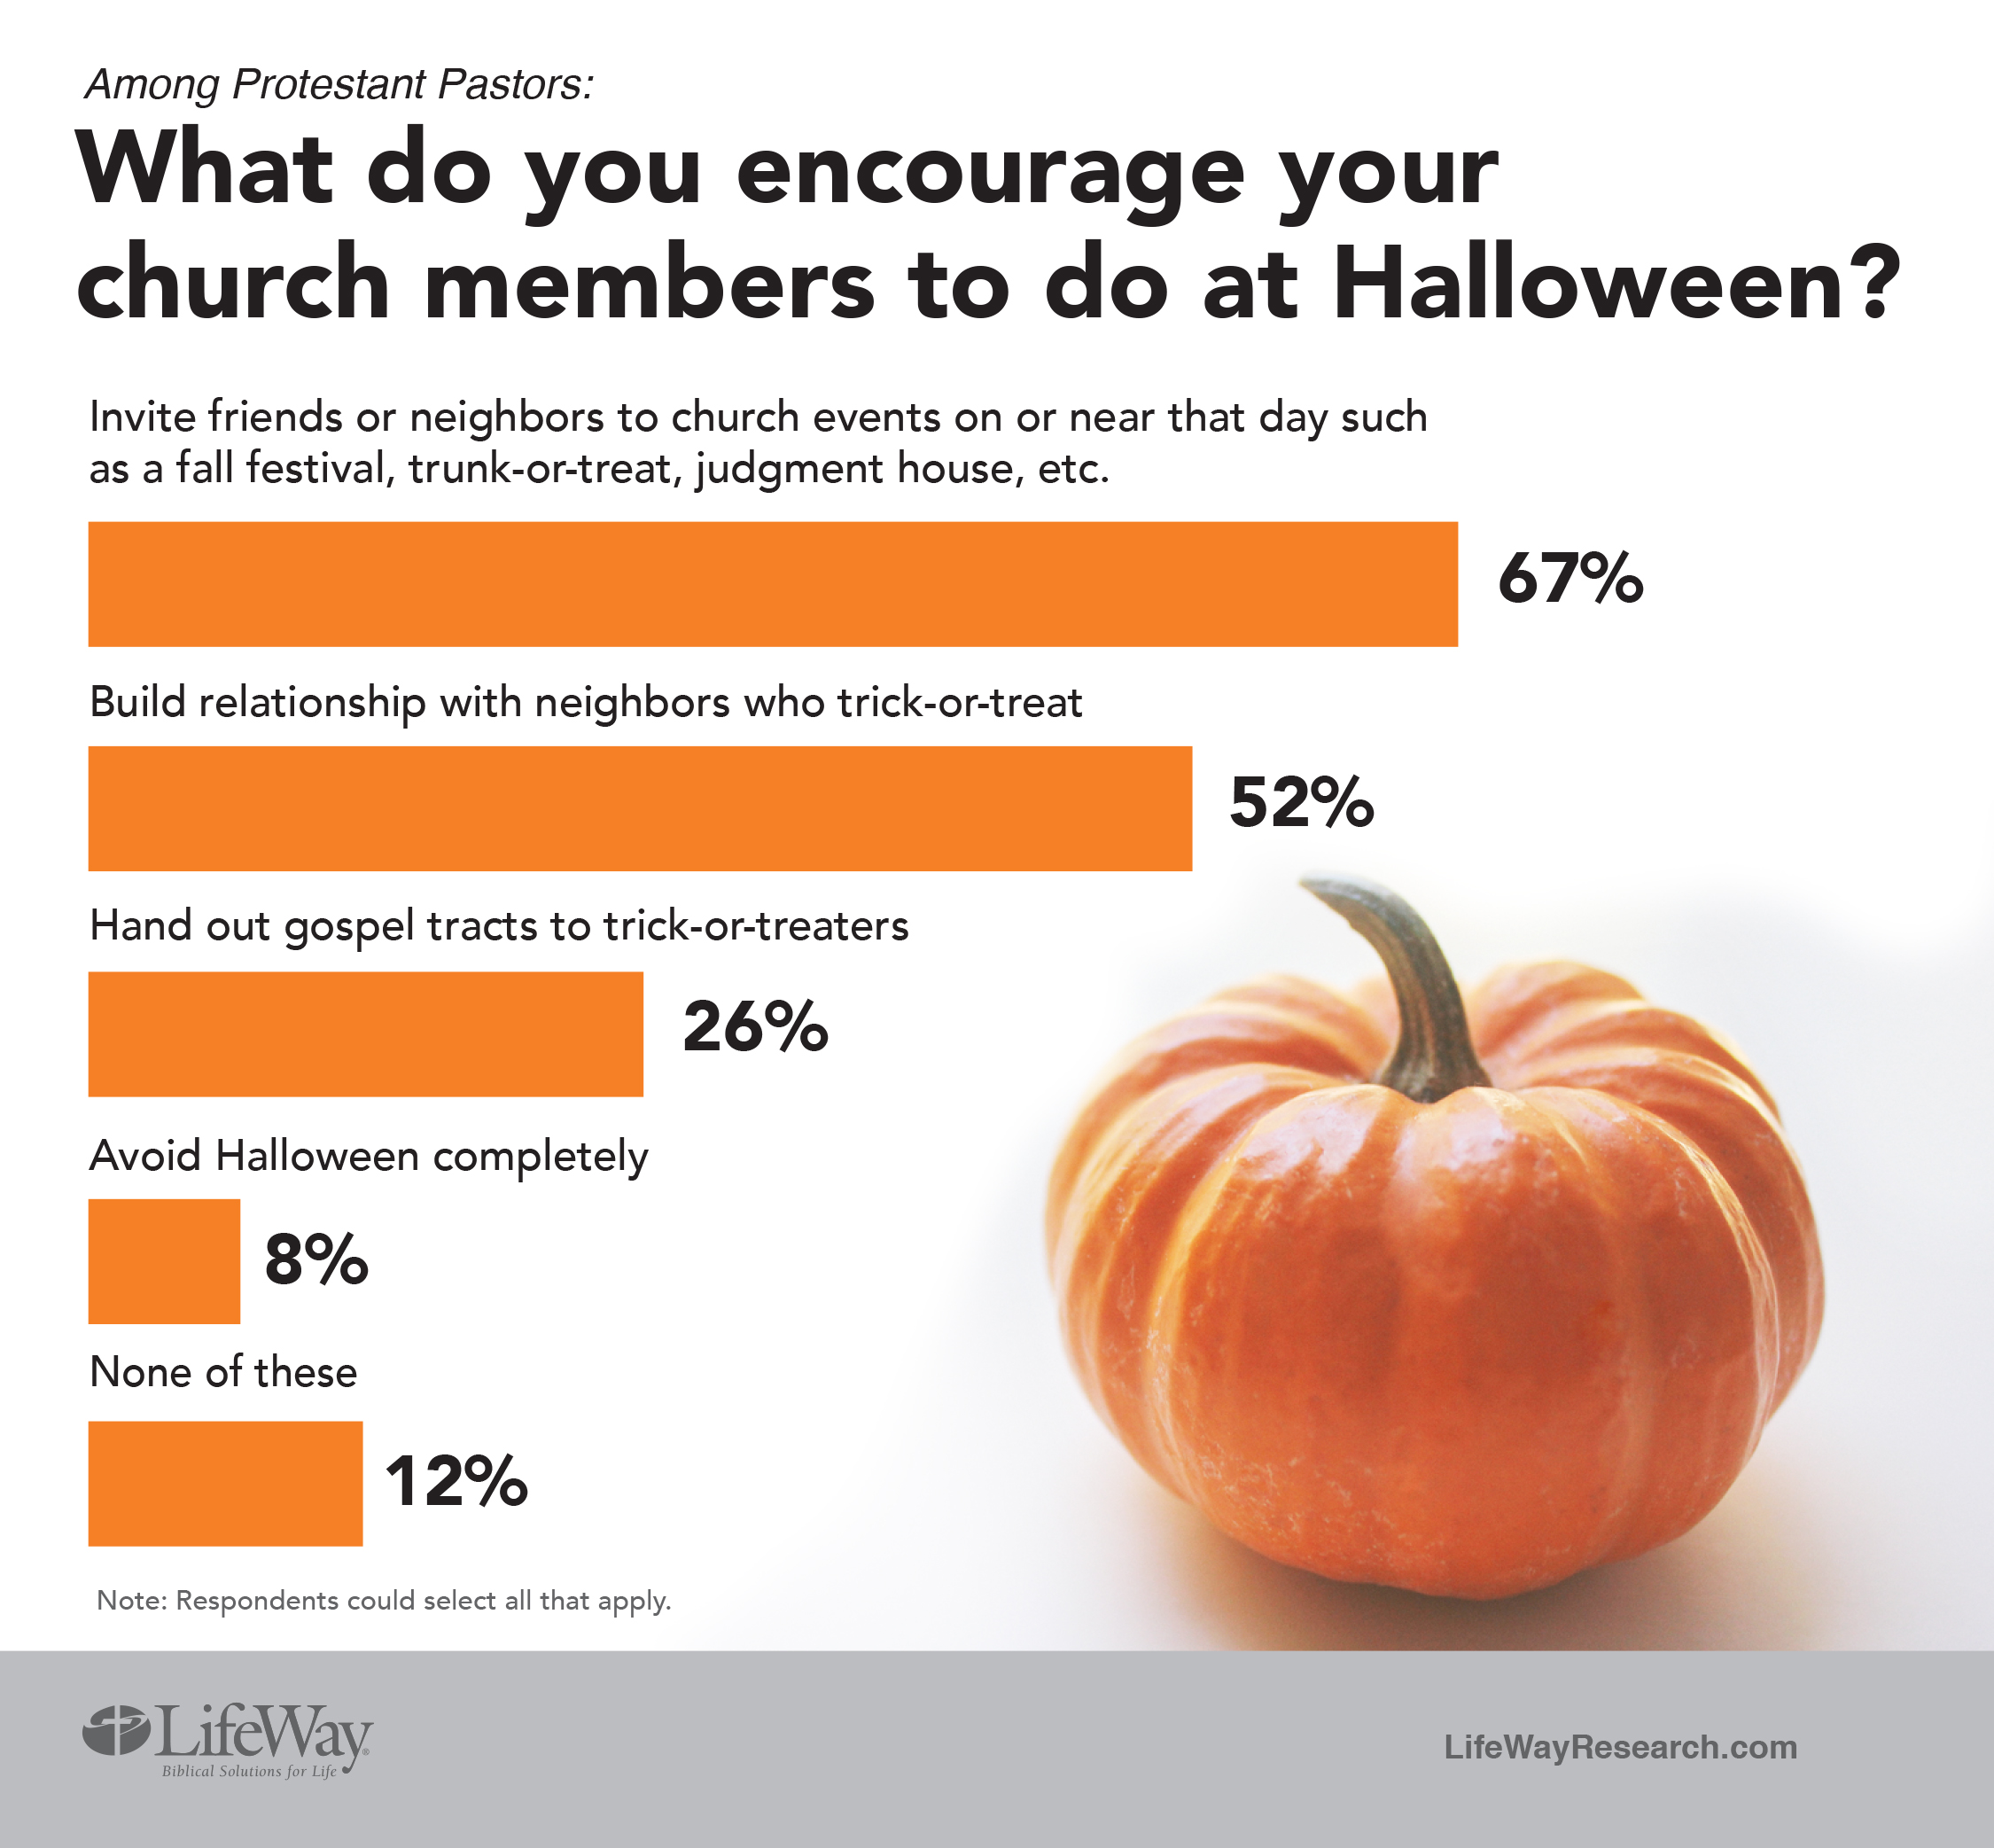 pastors-views-of-halloween-activities